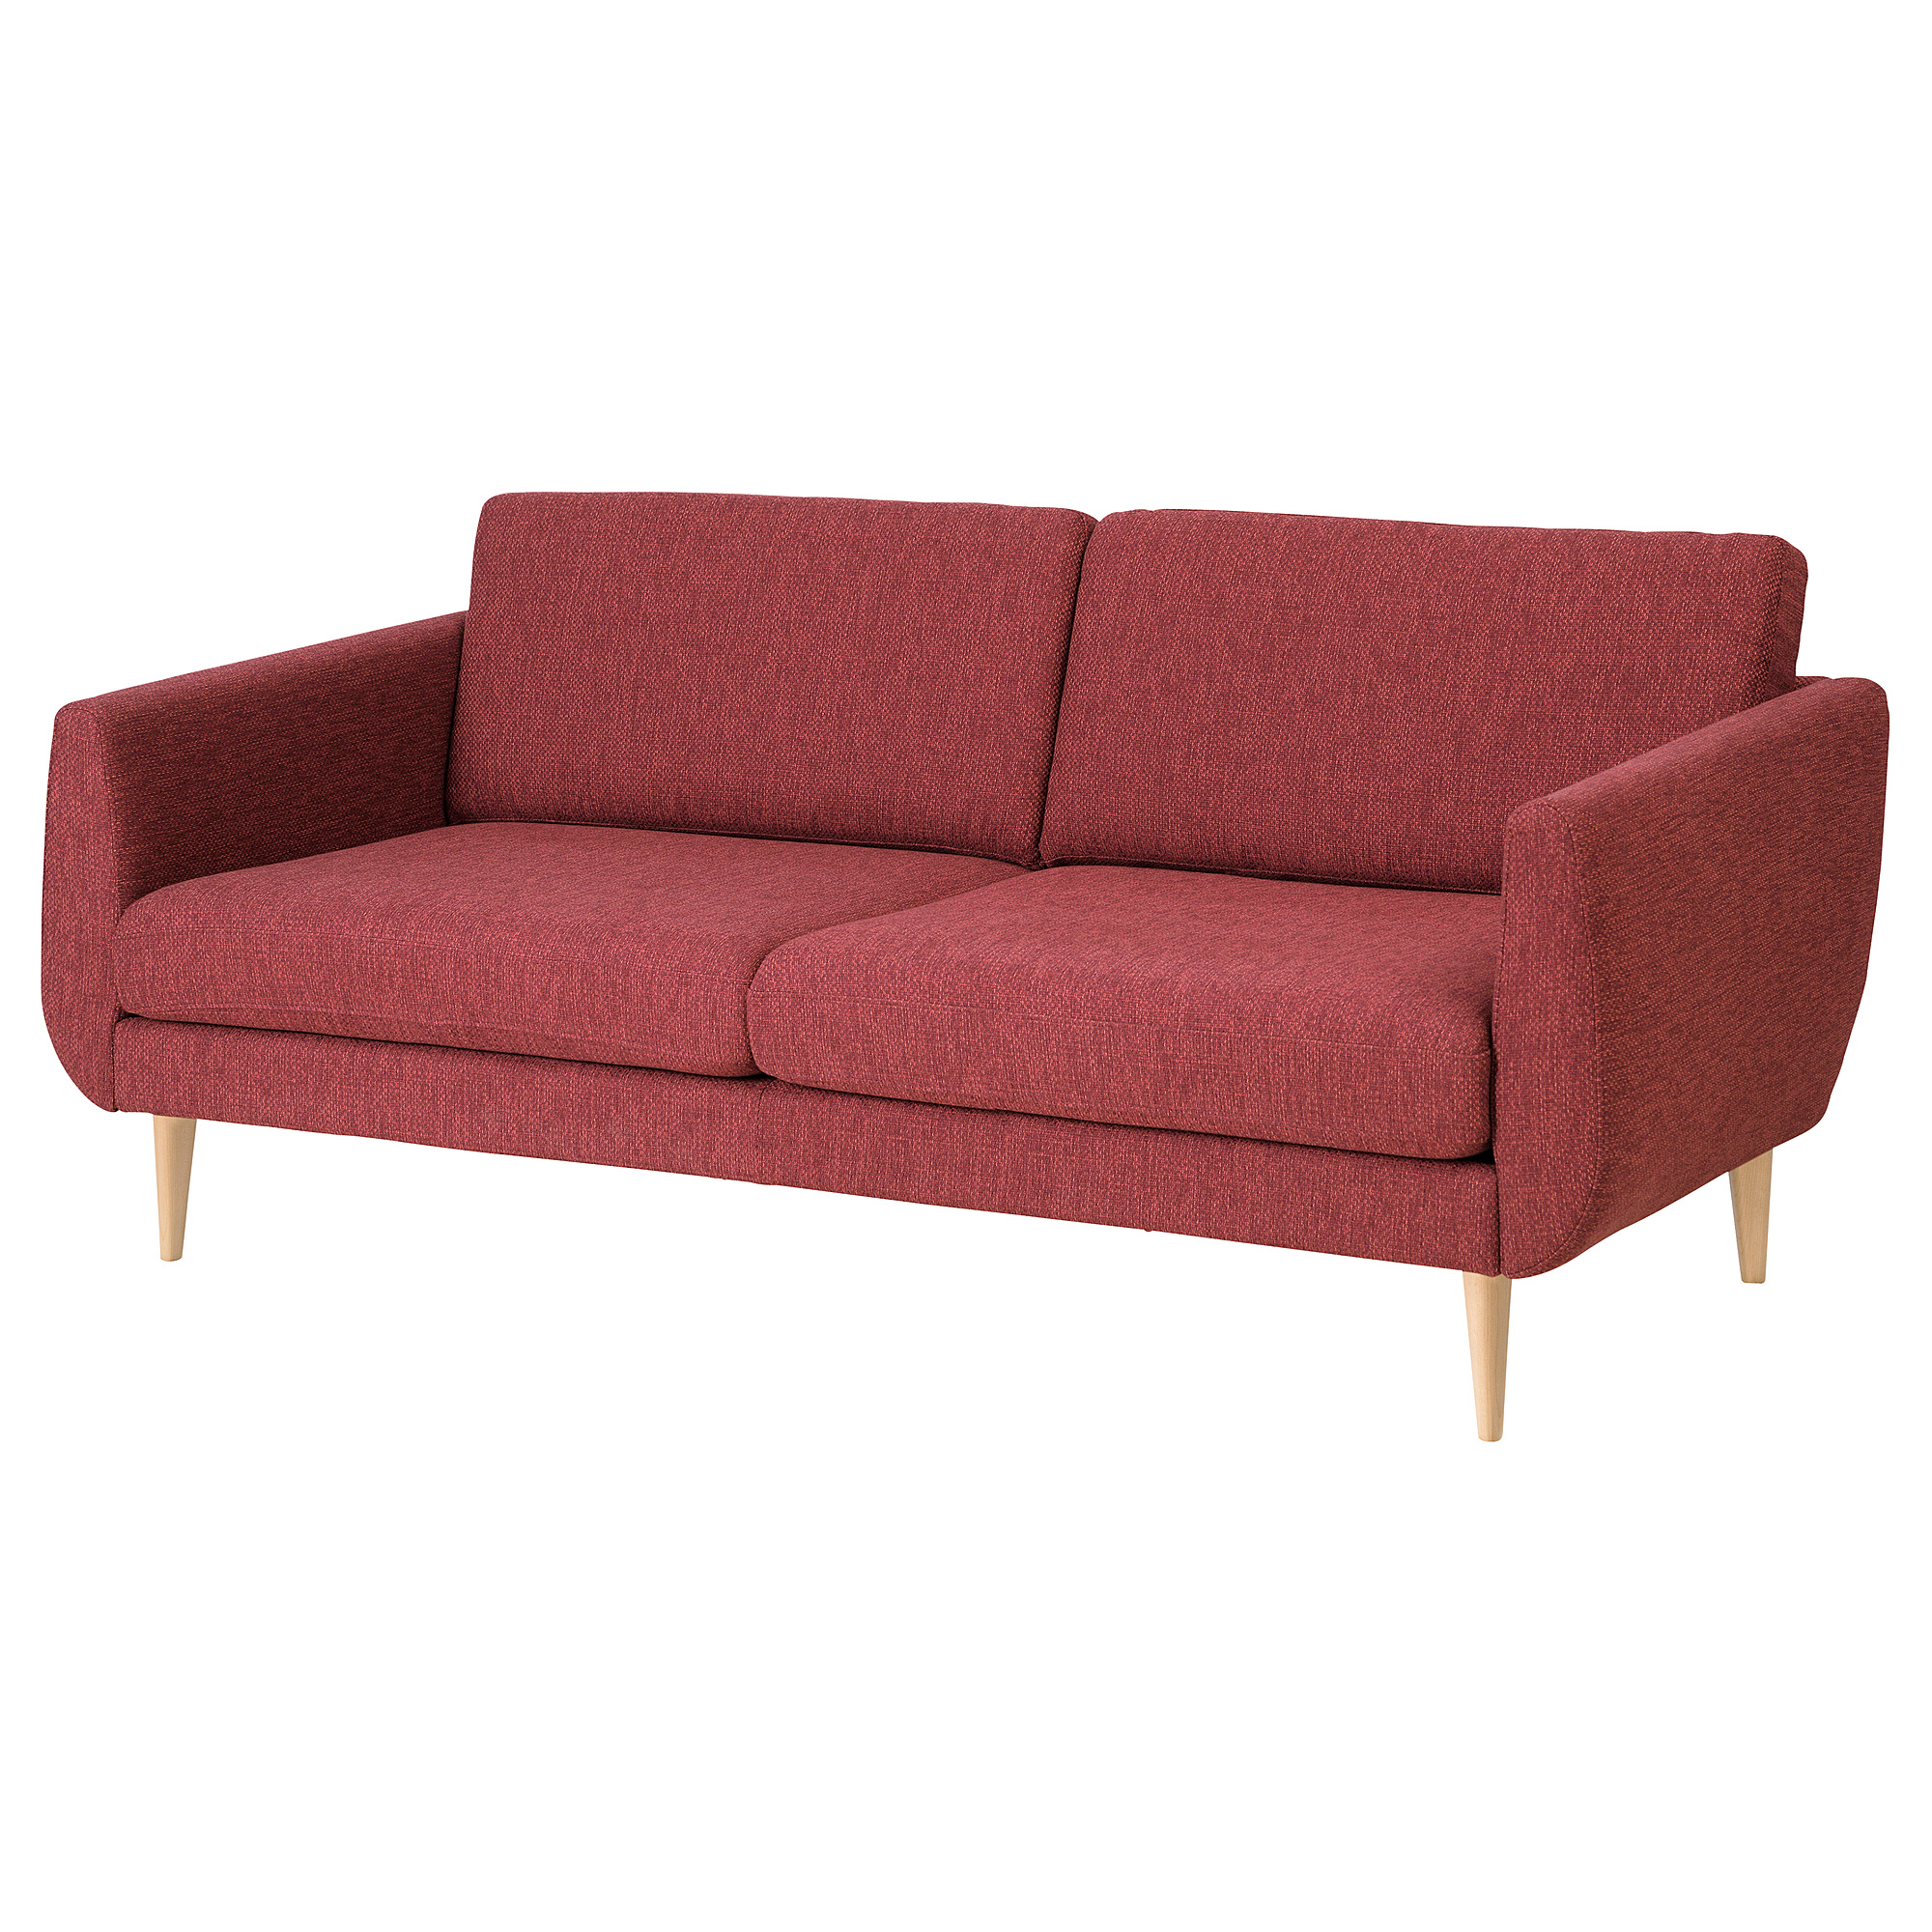 SMEDSTORP 3-seat sofa